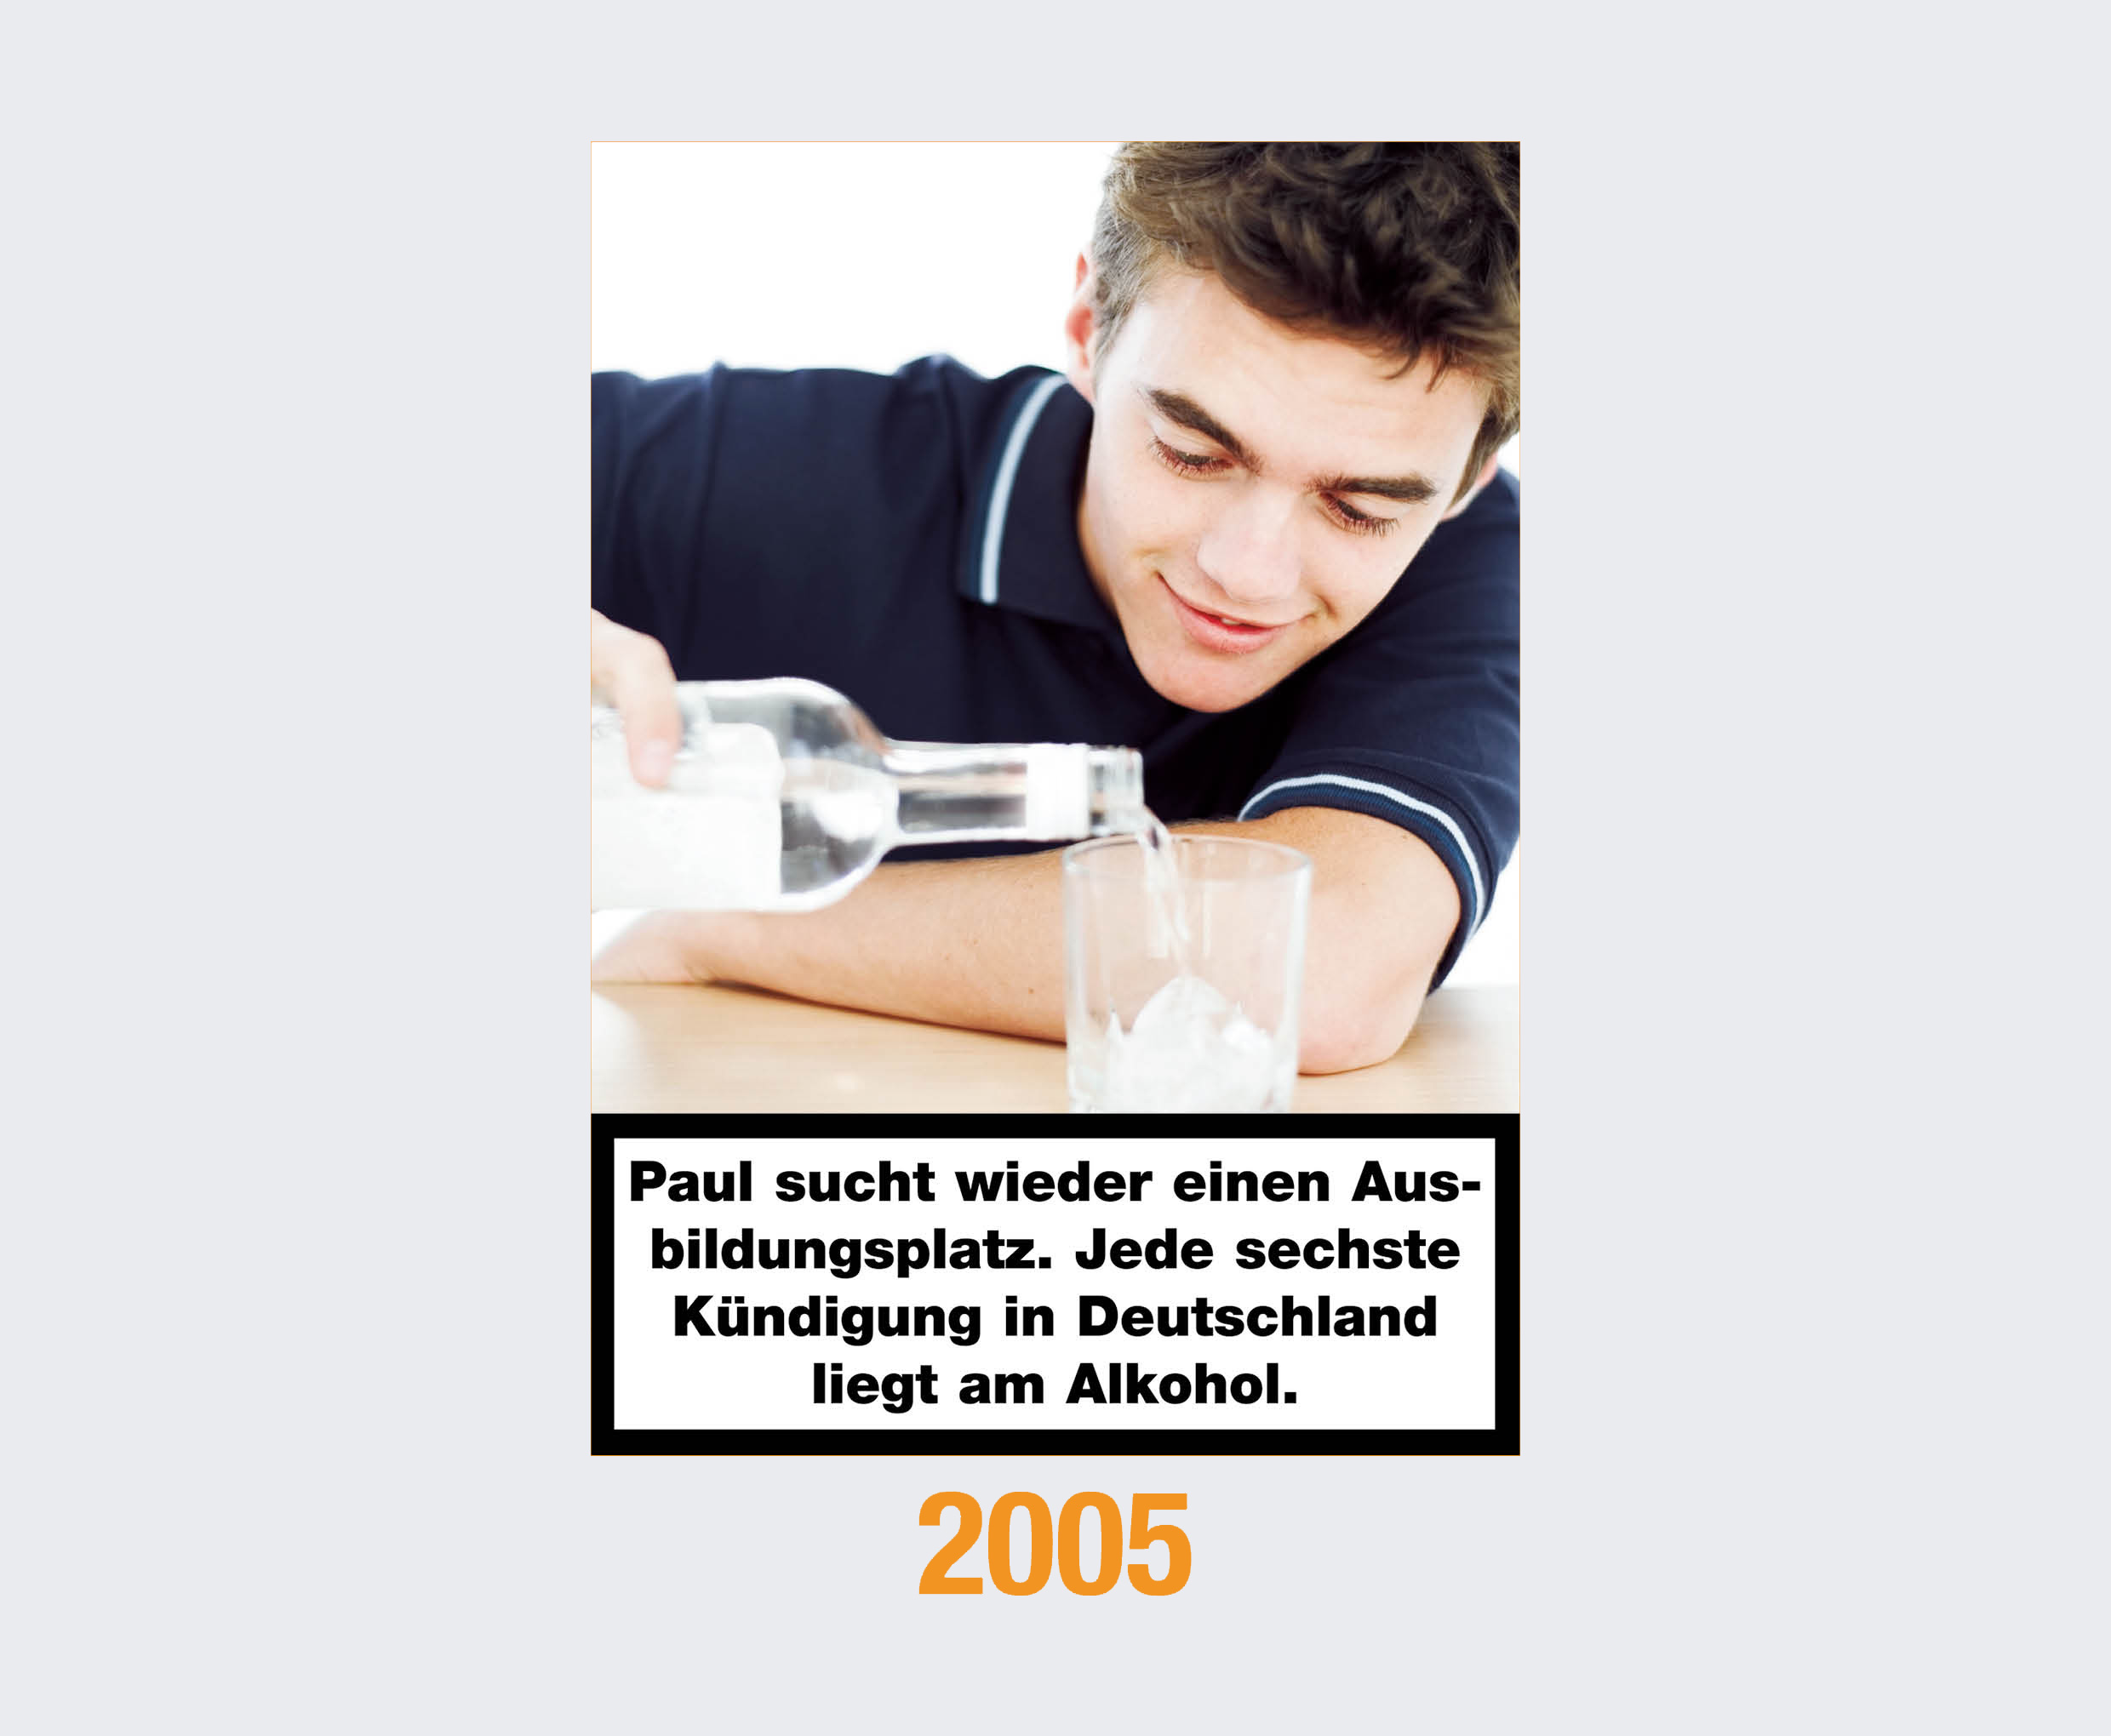 2005: Paul sucht wieder einen Ausbildungsplatz. Jede sechste Kündigung in Deutschland liegt am Alkohol. 